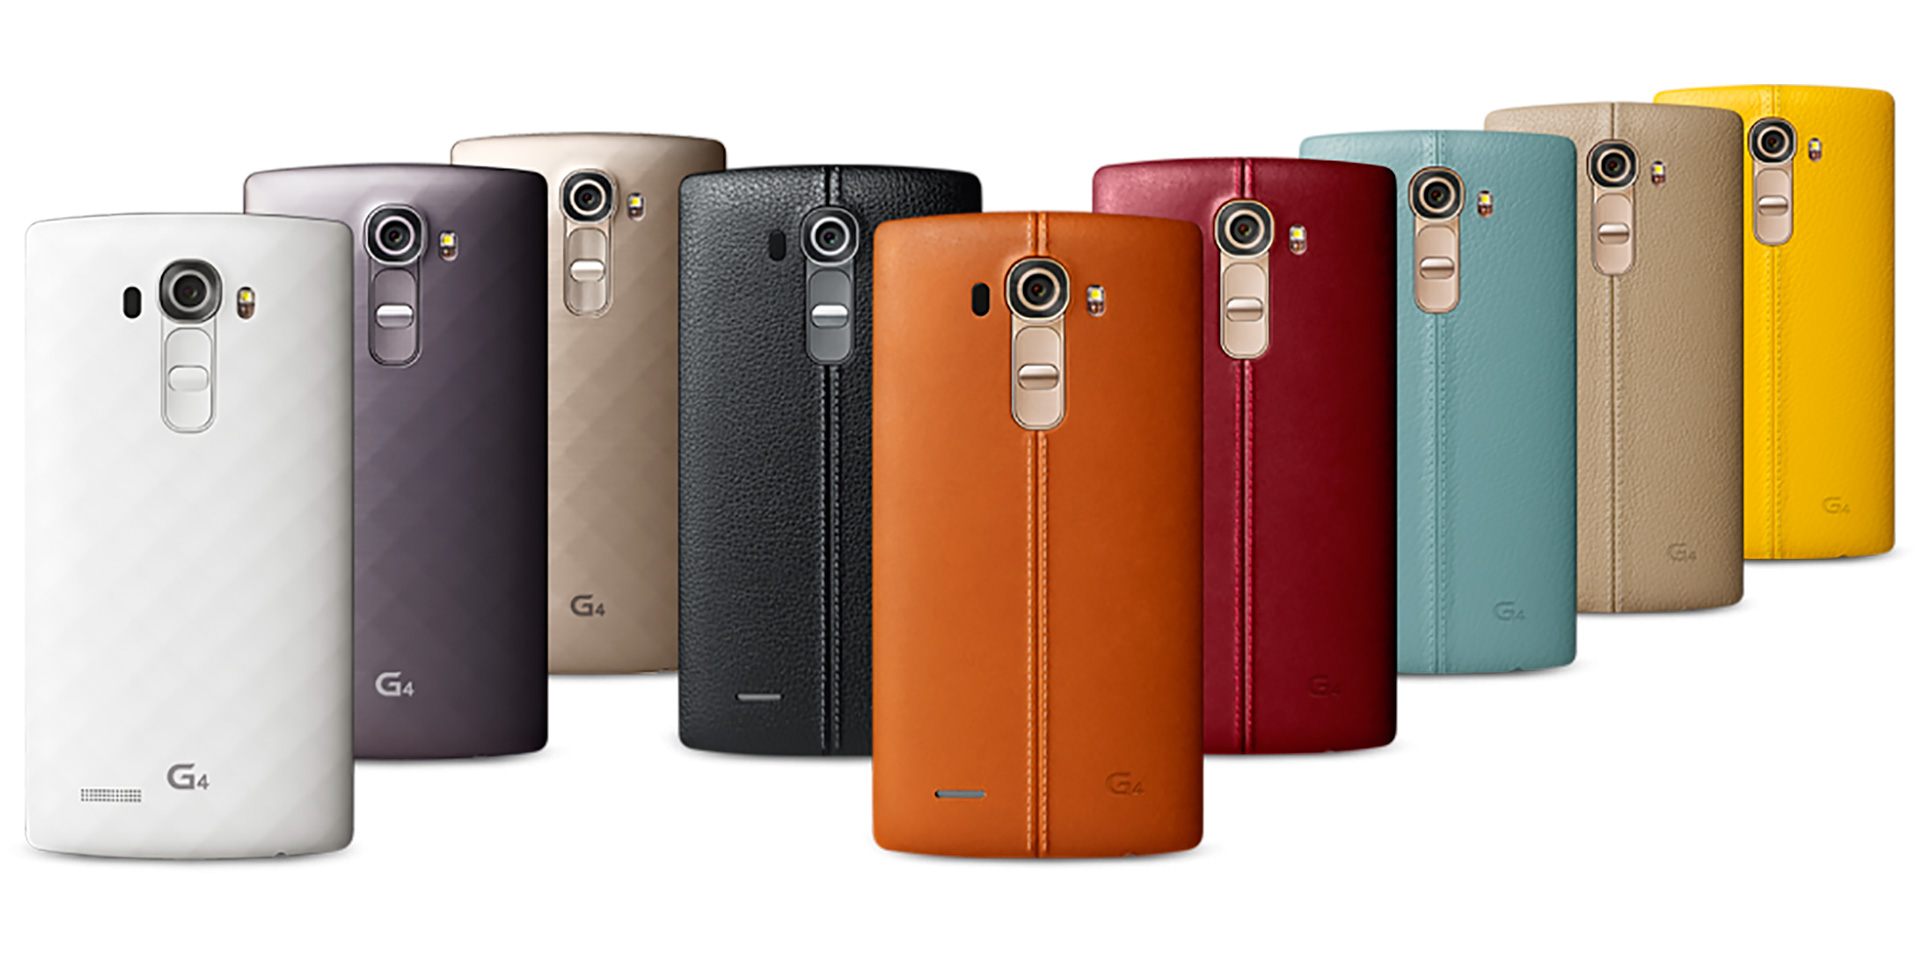 5 лучших смартфонов со съемной батареей - LG G4